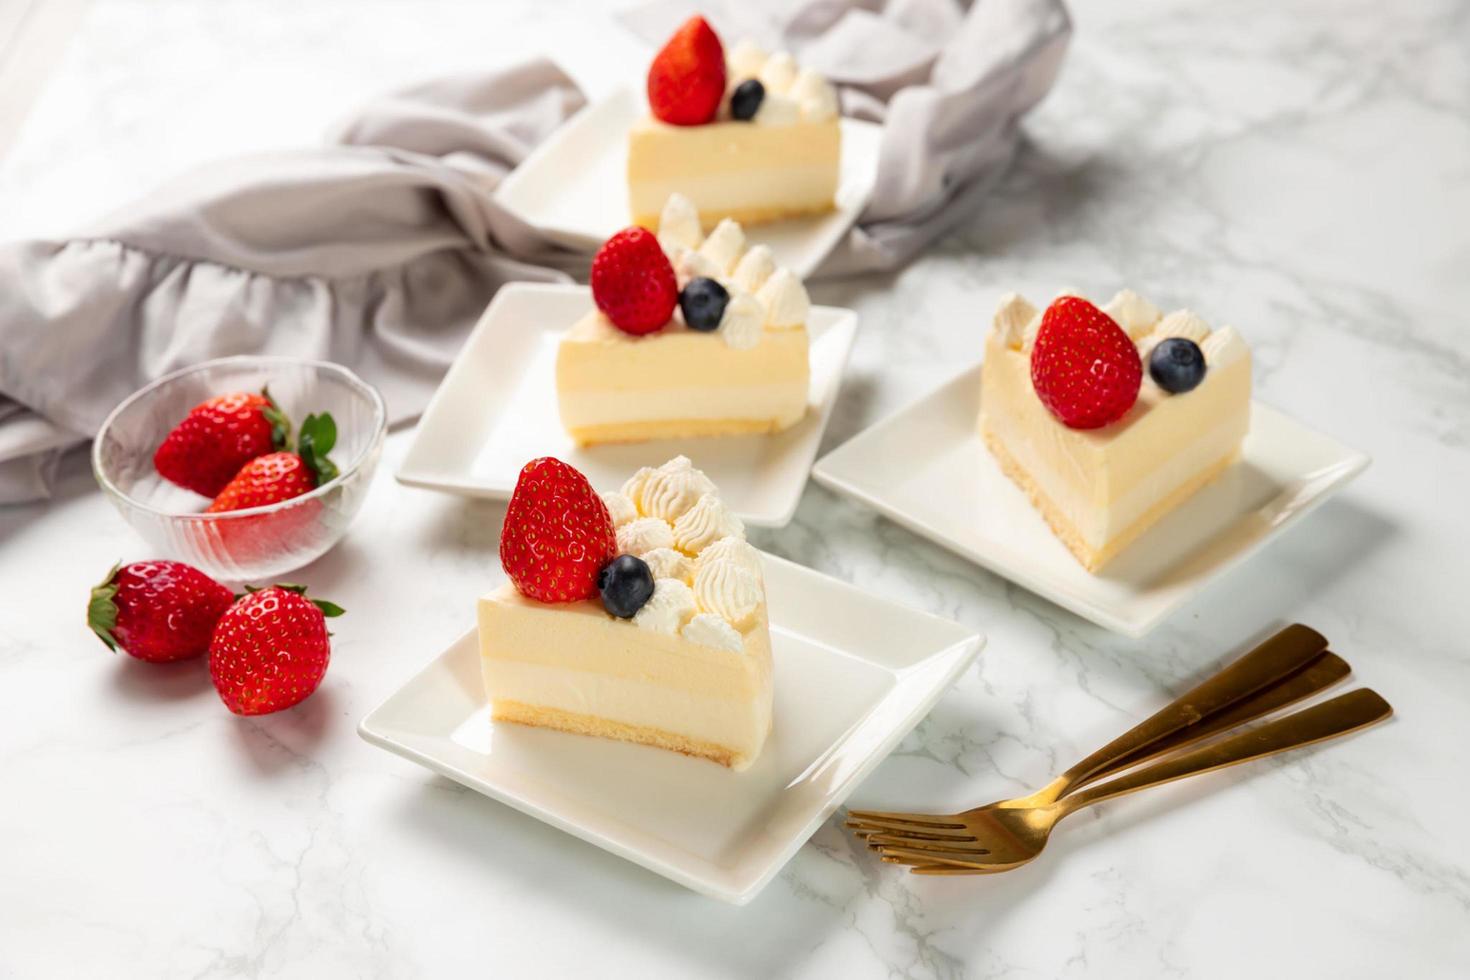 délicieux gâteau au fromage avec fraises fraîches et myrtilles sans cuisson sur table en marbre photo